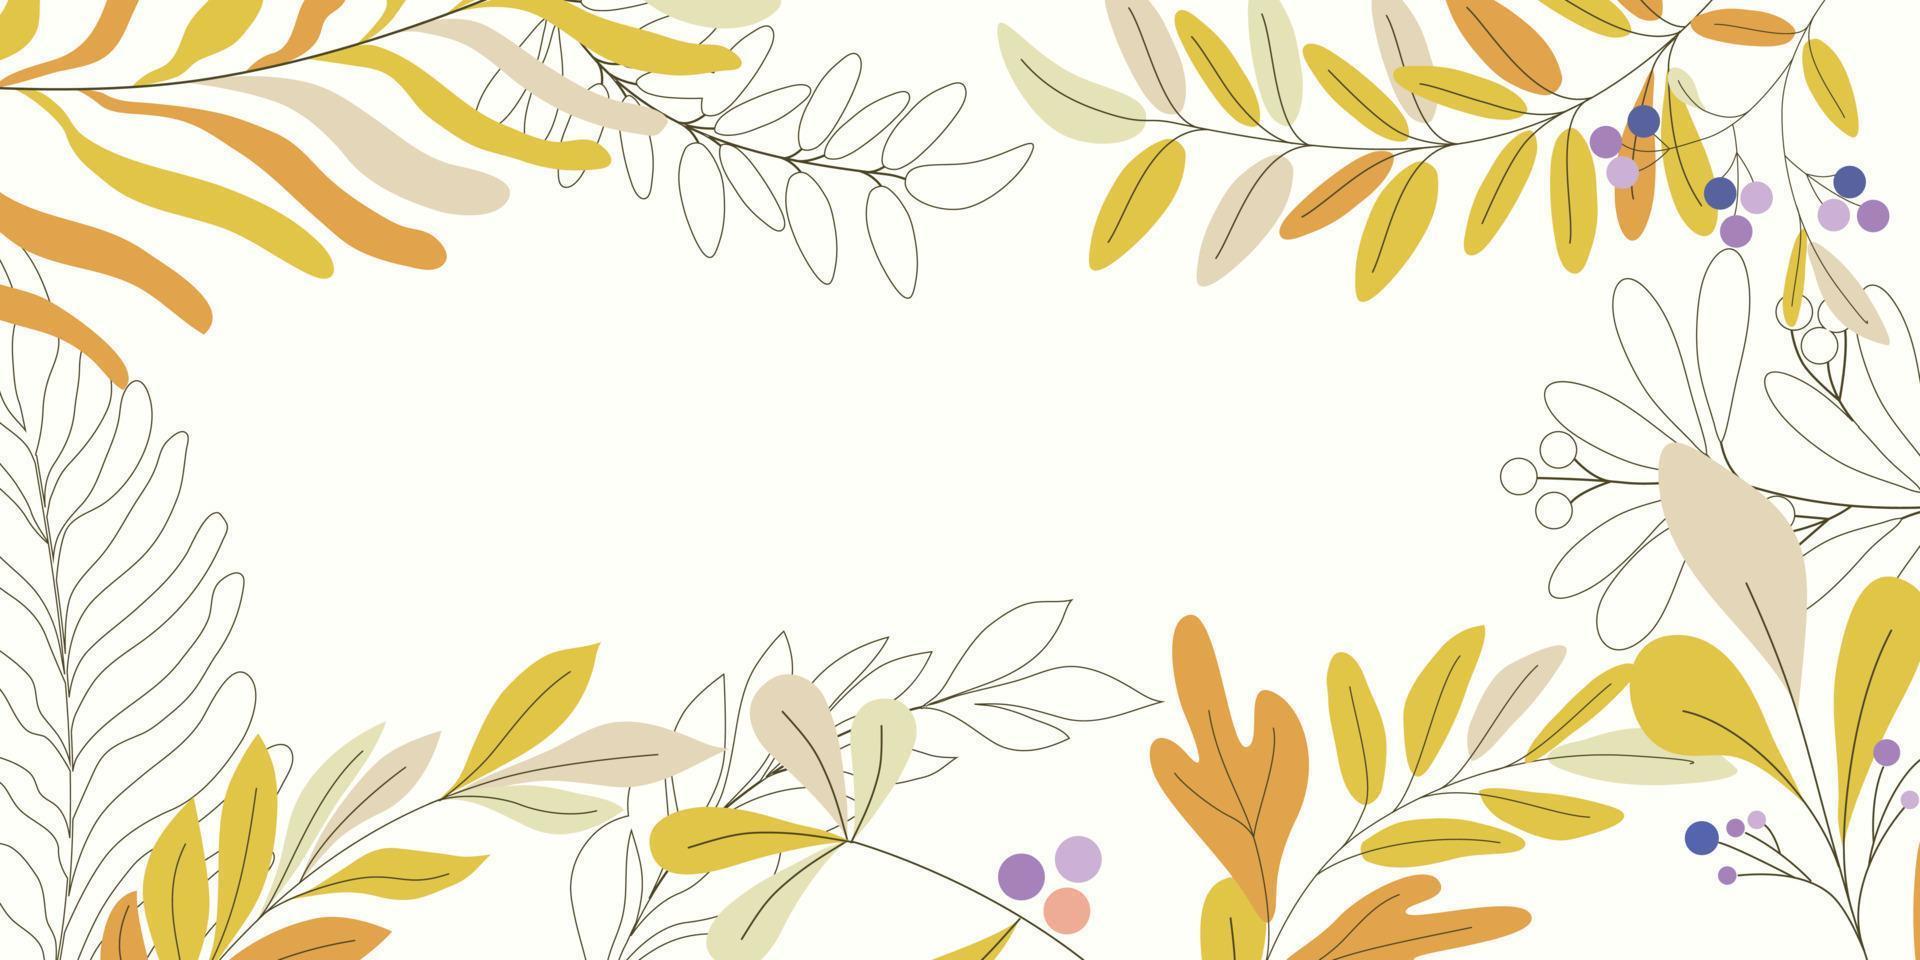 marco de hojas verdes naturales de fondo. diseño de patrón de papel tapiz de hoja de verano tropical, tema de la naturaleza simple ilustración vectorial vector